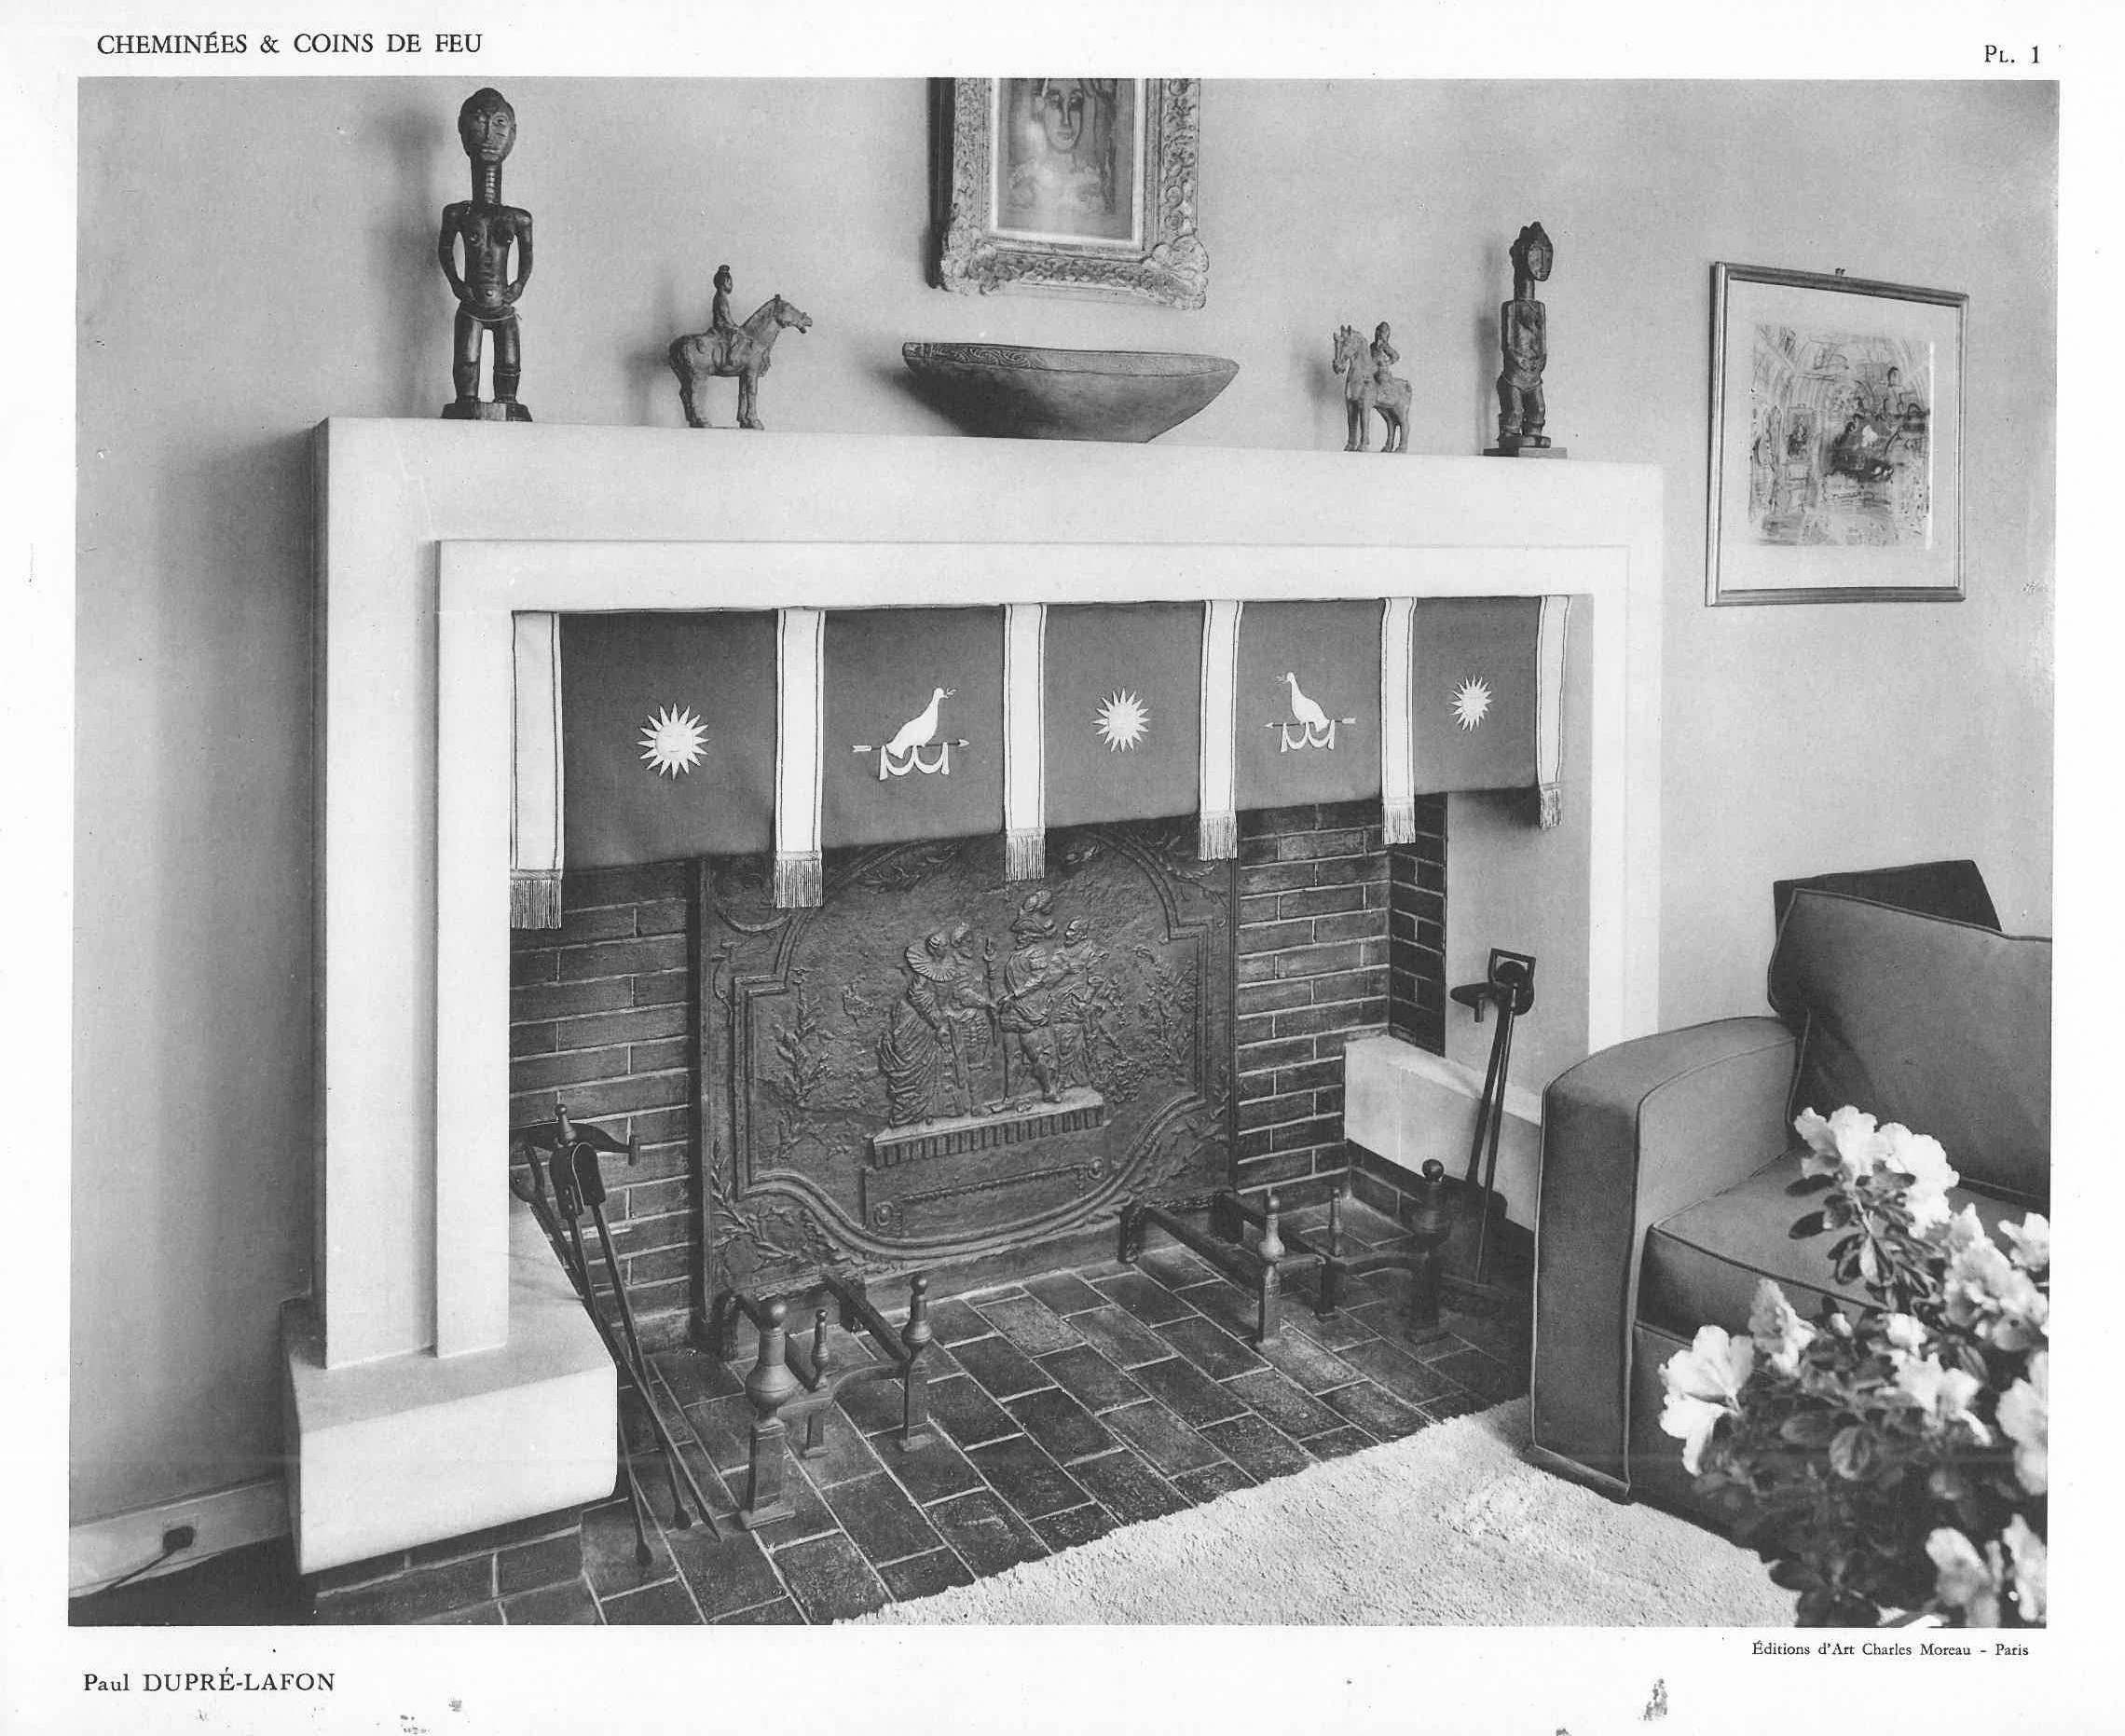 Jean Royere, l'un des principaux designers de meubles français du milieu du XXe siècle, a rassemblé et édité cette collection de modèles de cheminées et de foyers des années 1940. Les créateurs présentés sont Paul Dupre-Lafon (5), Suzanne